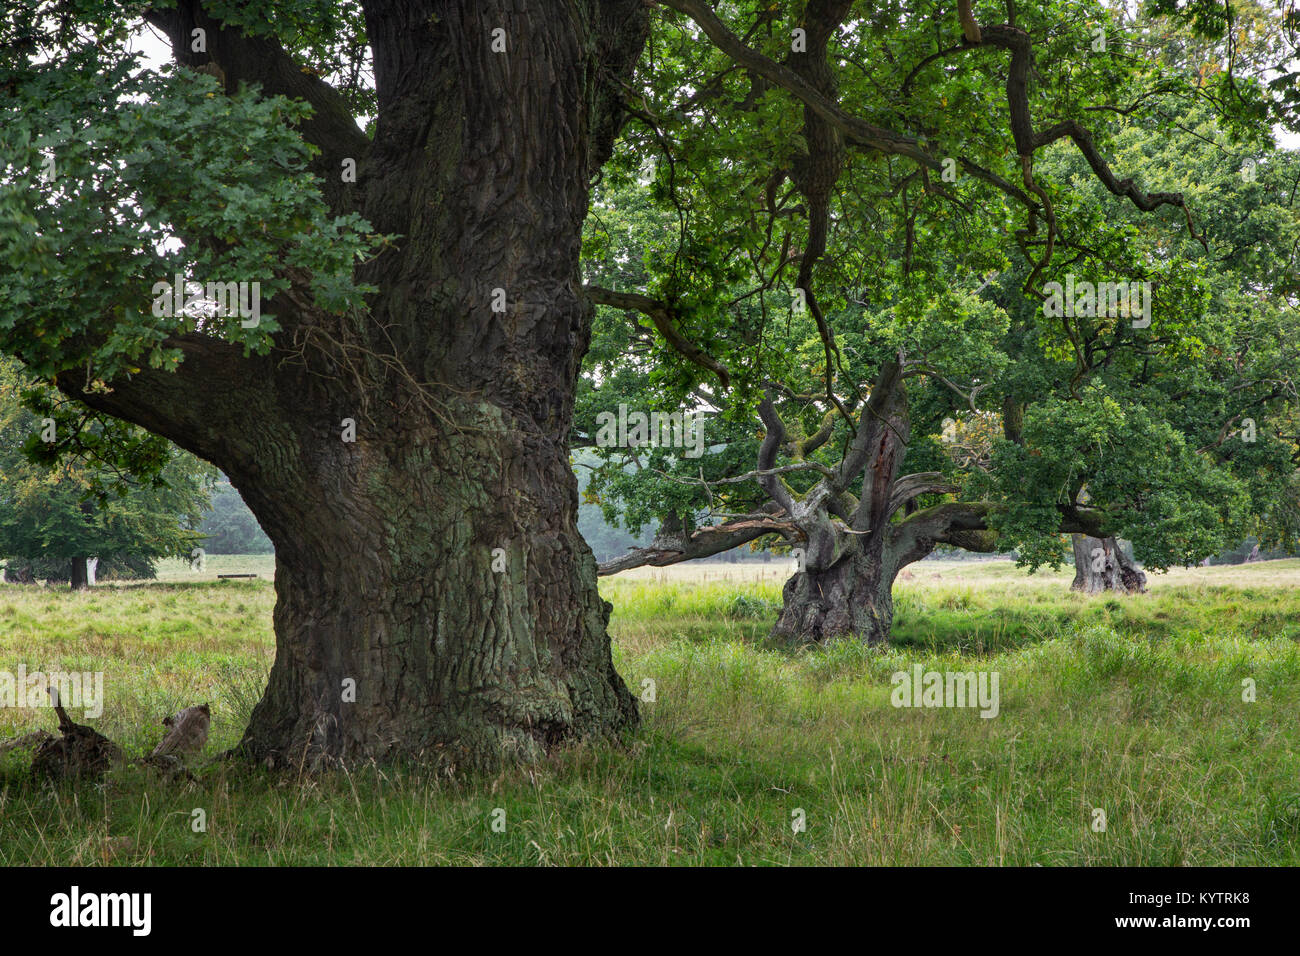 Des siècles anciens vieux chênes Anglais / arbres le chêne pédonculé (Quercus robur) dans la région de Jaegersborg Dyrehave Dyrehaven / près de Copenhague, Danemark Banque D'Images